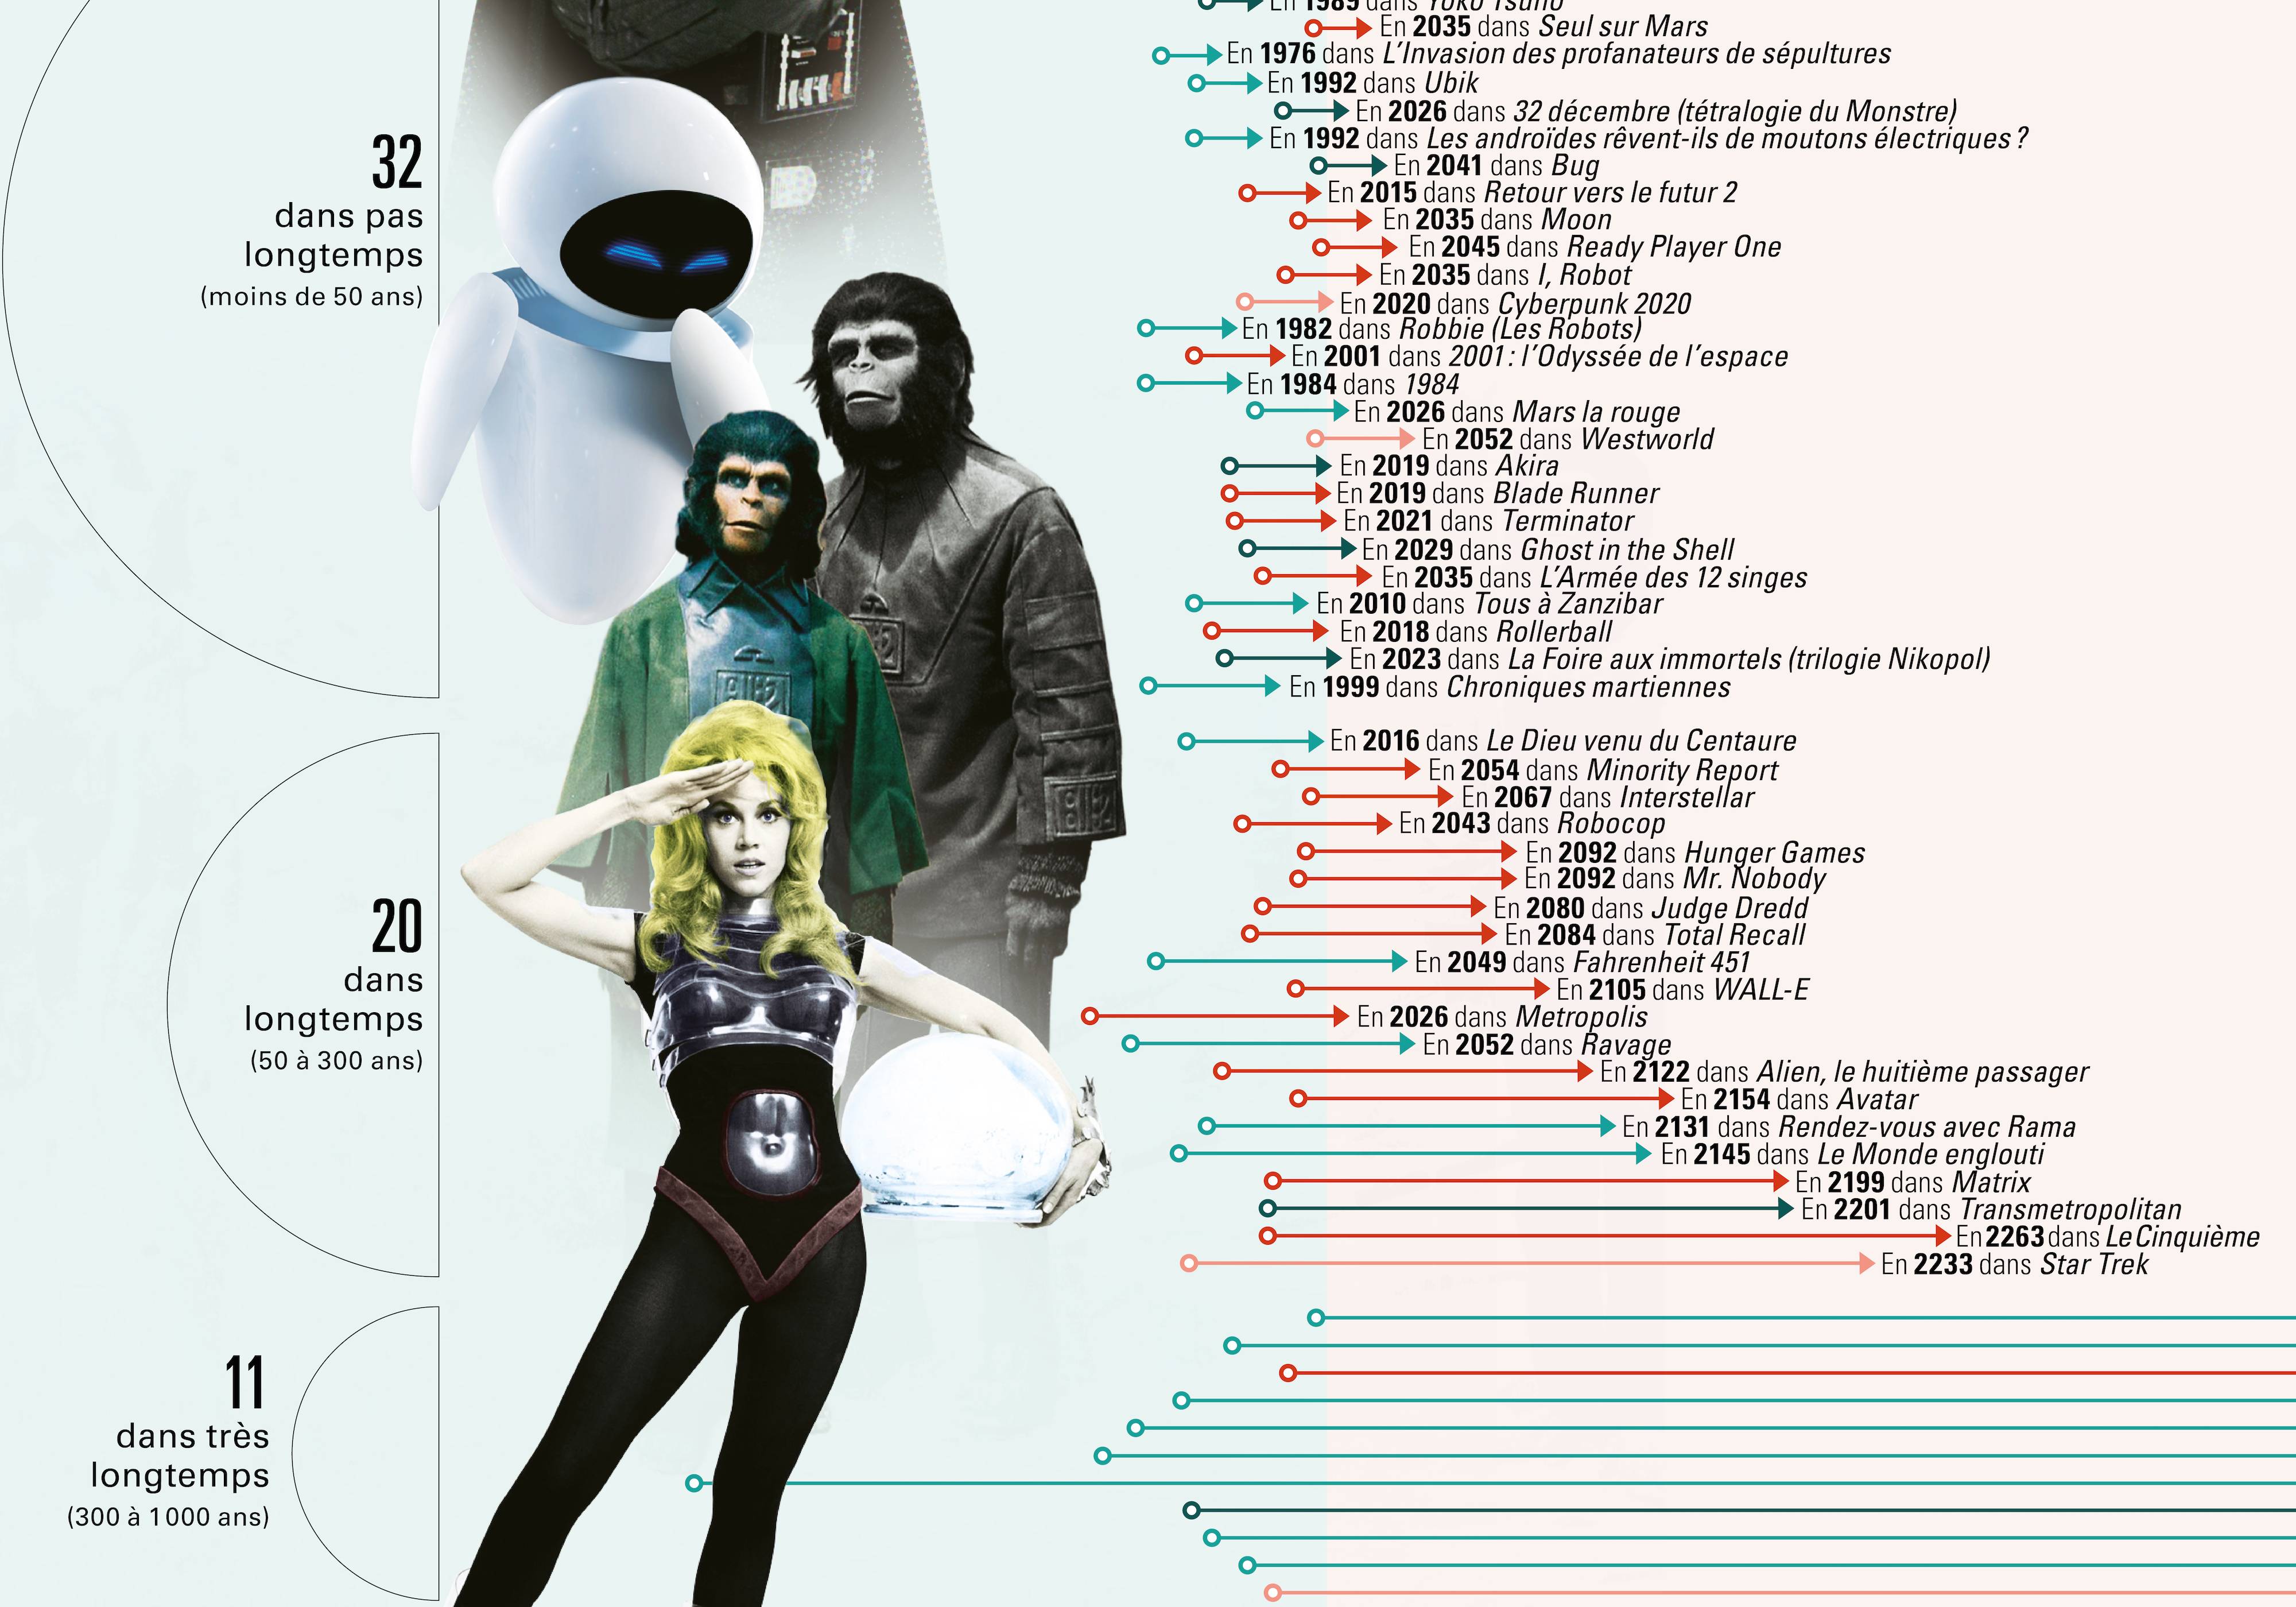 infographie datant le futur d'après des oeuvres de science-fiction